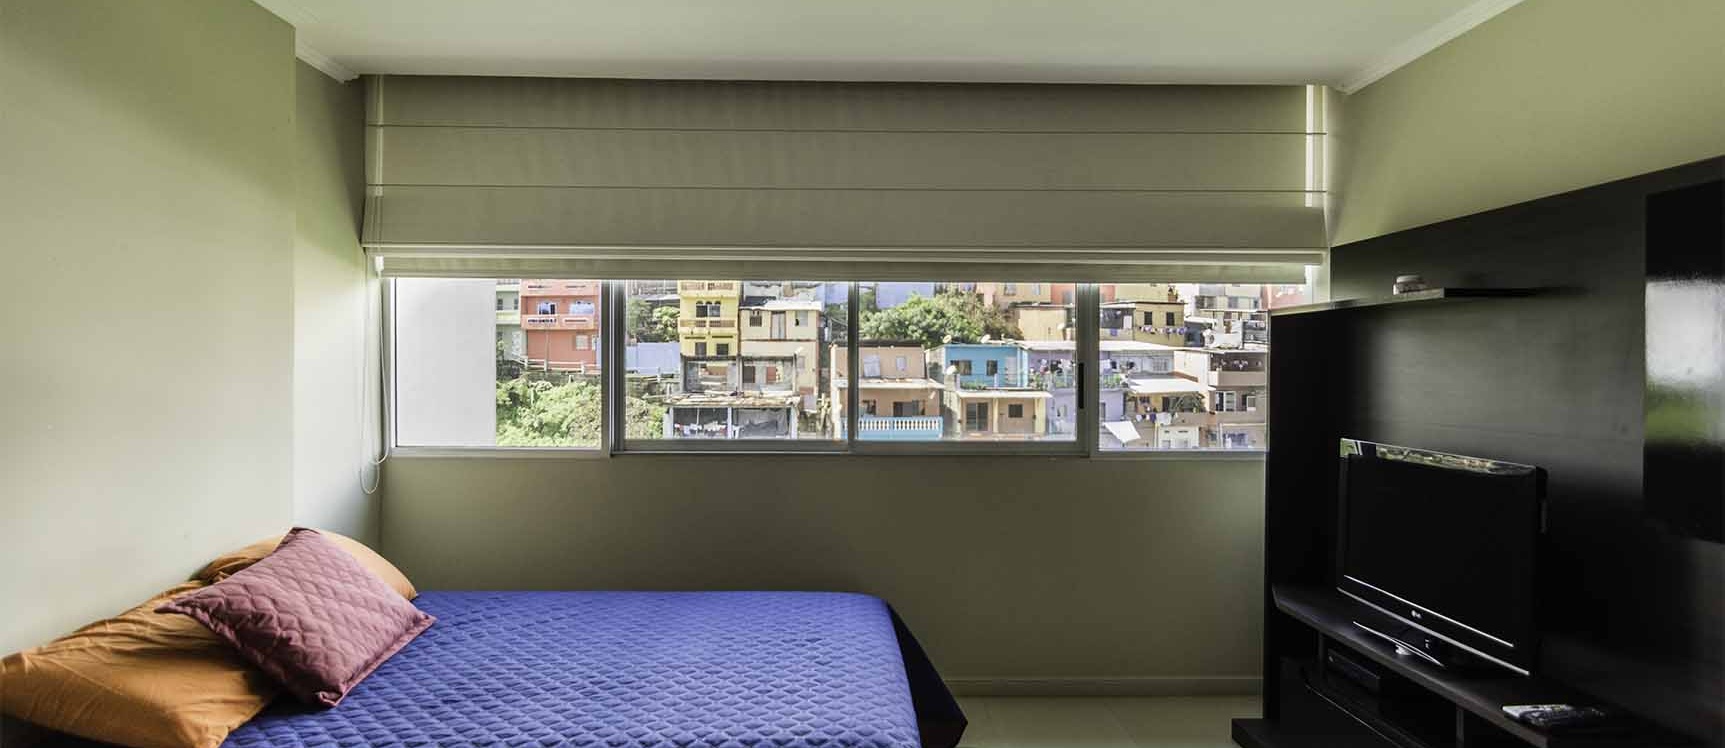 GeoBienes - Departamento amoblado en alquiler - Riverfront I - Plusvalia Guayaquil Casas de venta y alquiler Inmobiliaria Ecuador